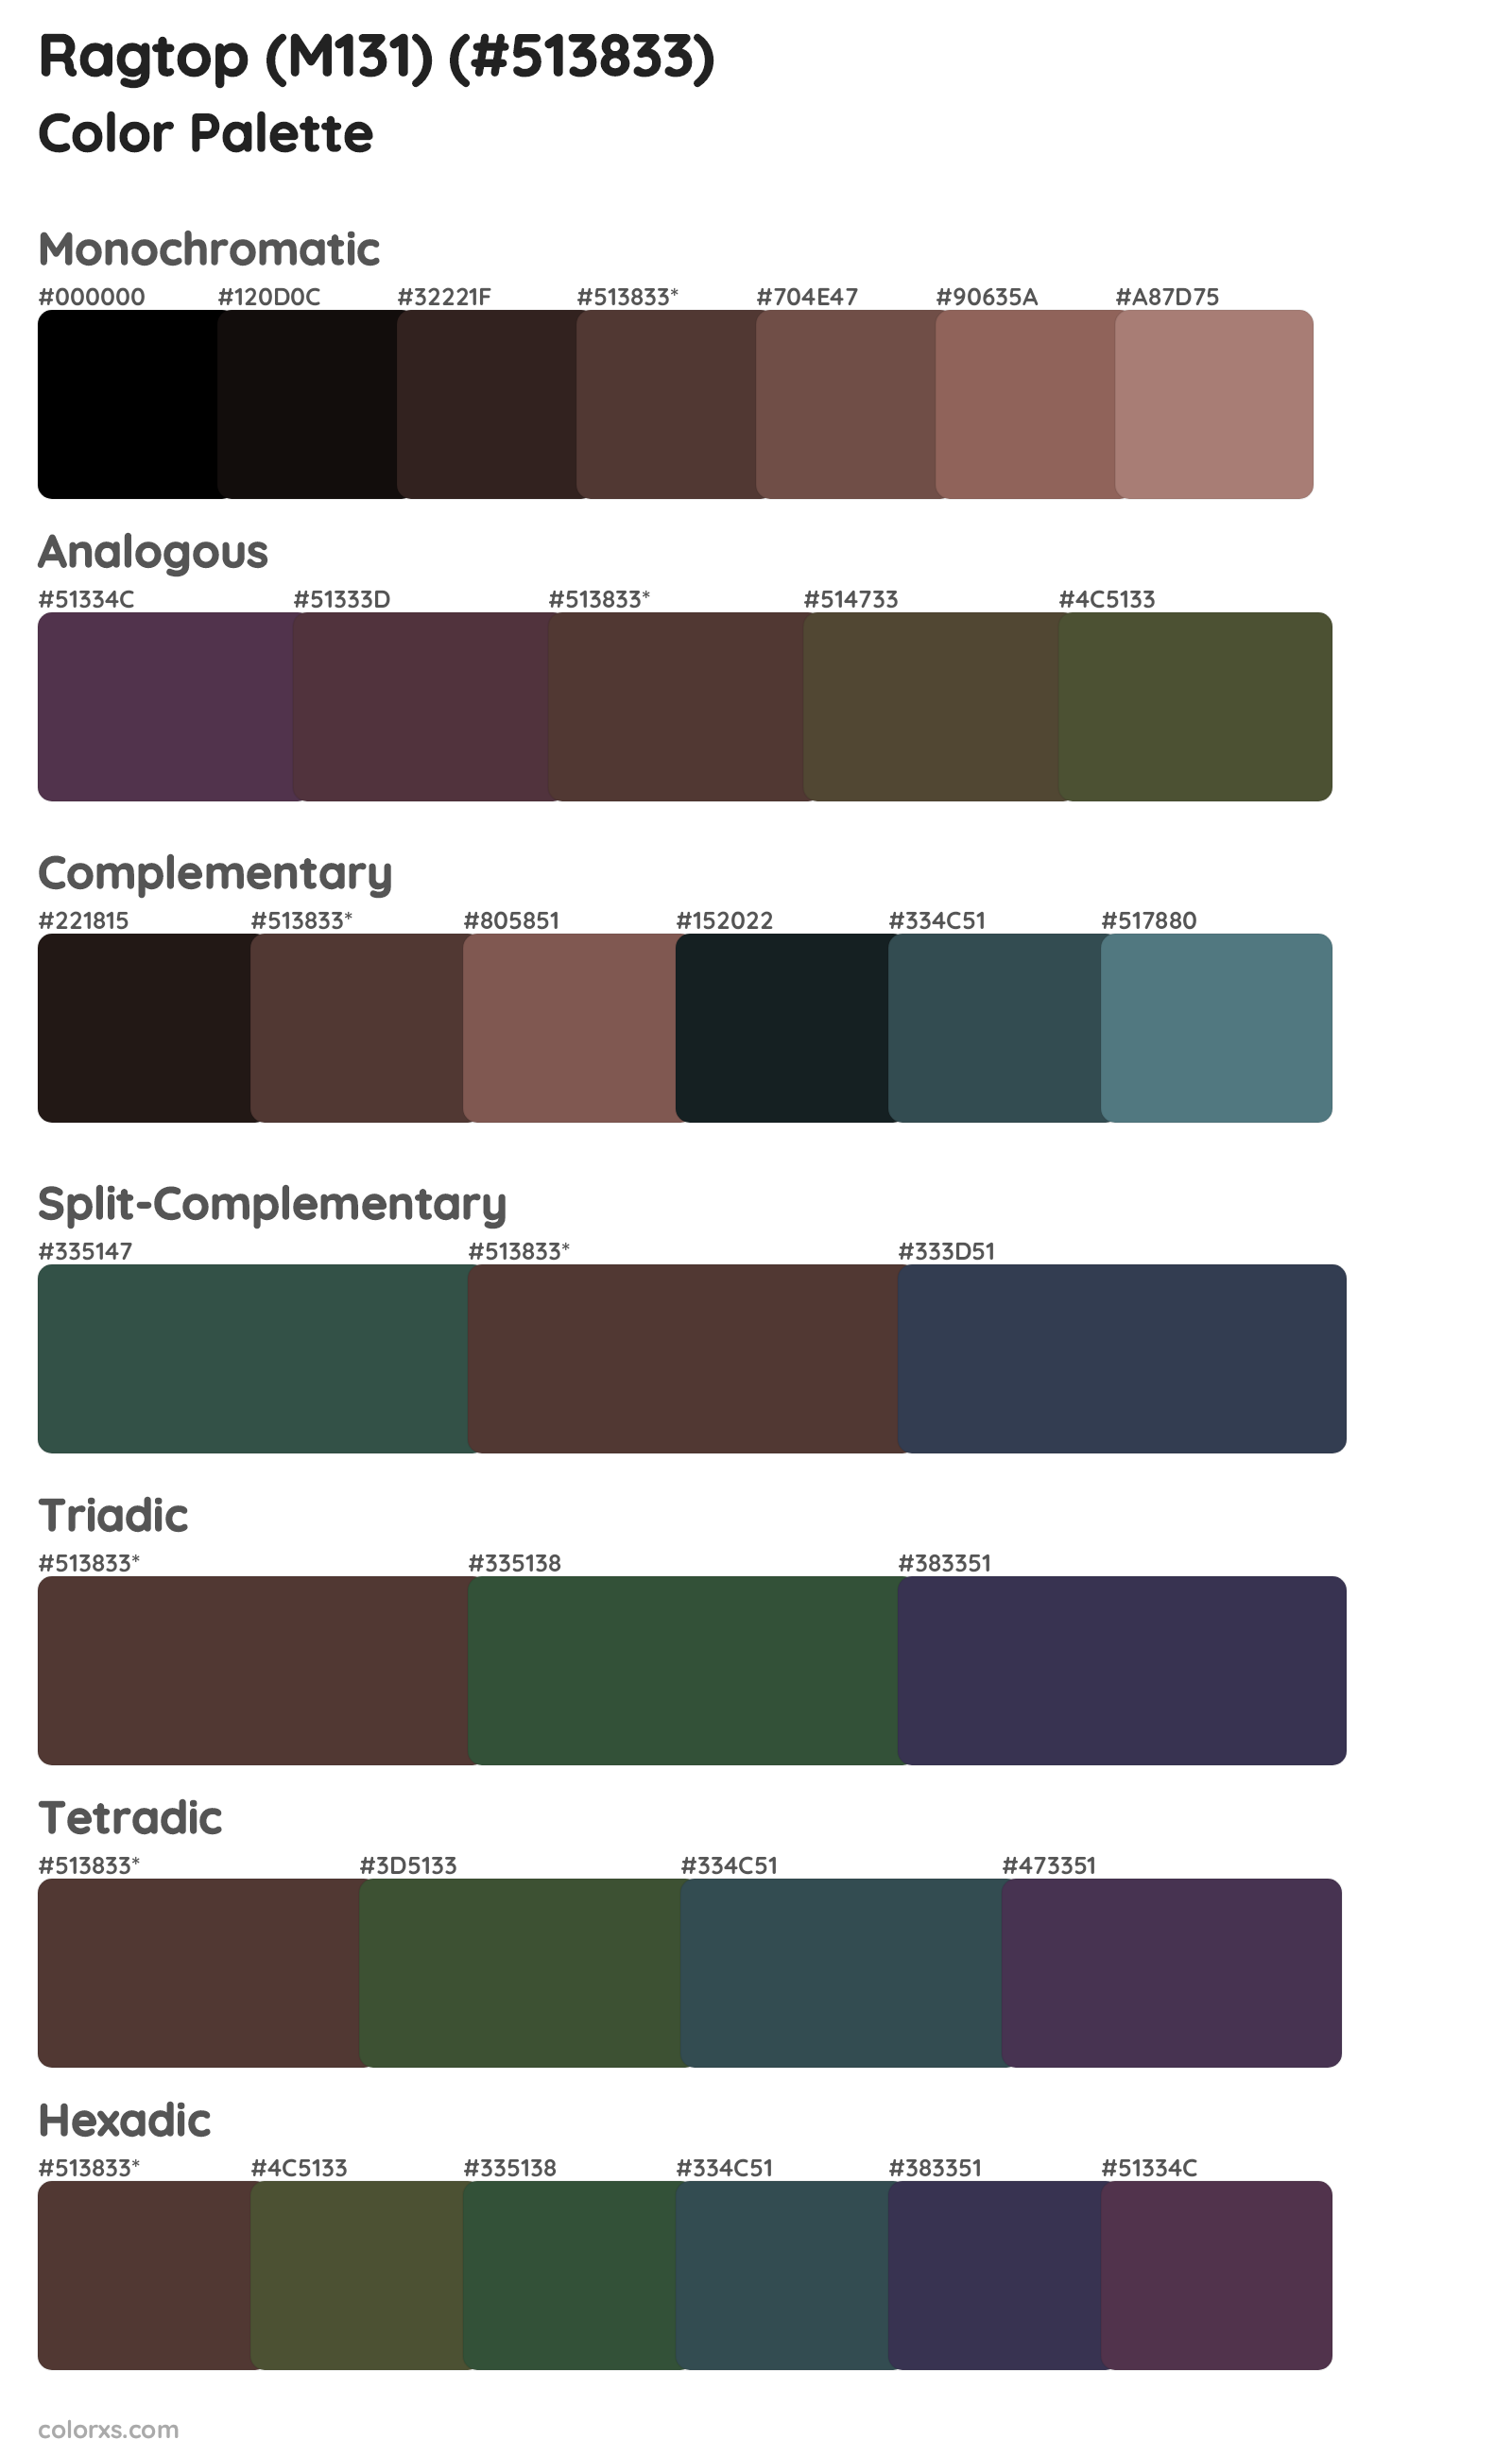 Ragtop (M131) Color Scheme Palettes